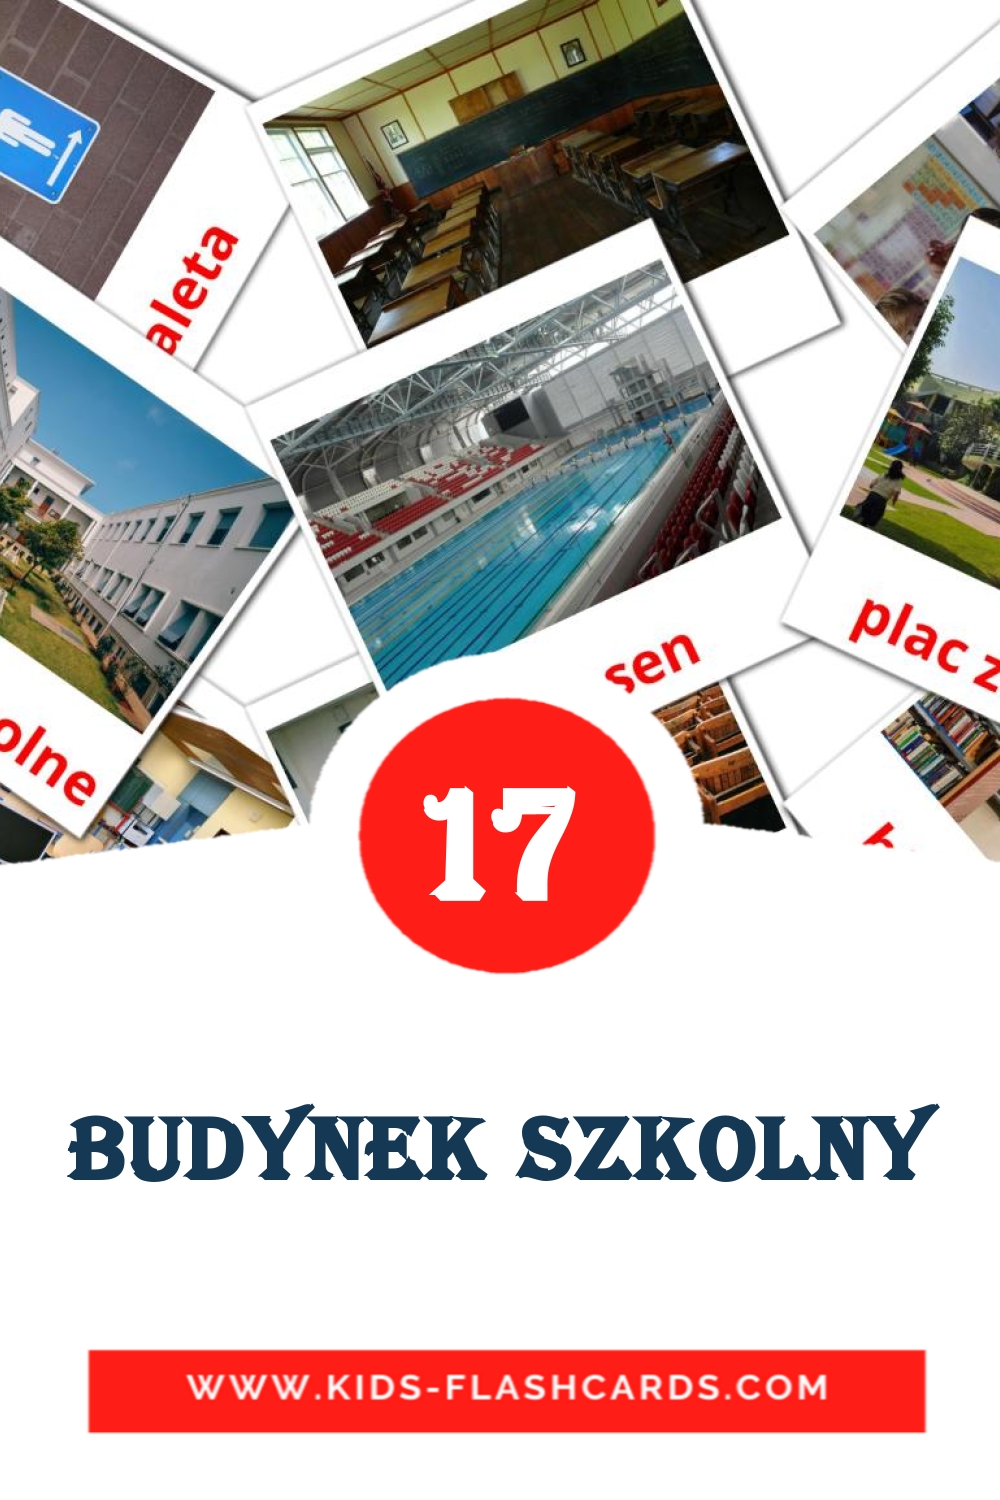 17 Budynek szkolny Bildkarten für den Kindergarten auf Polnisch